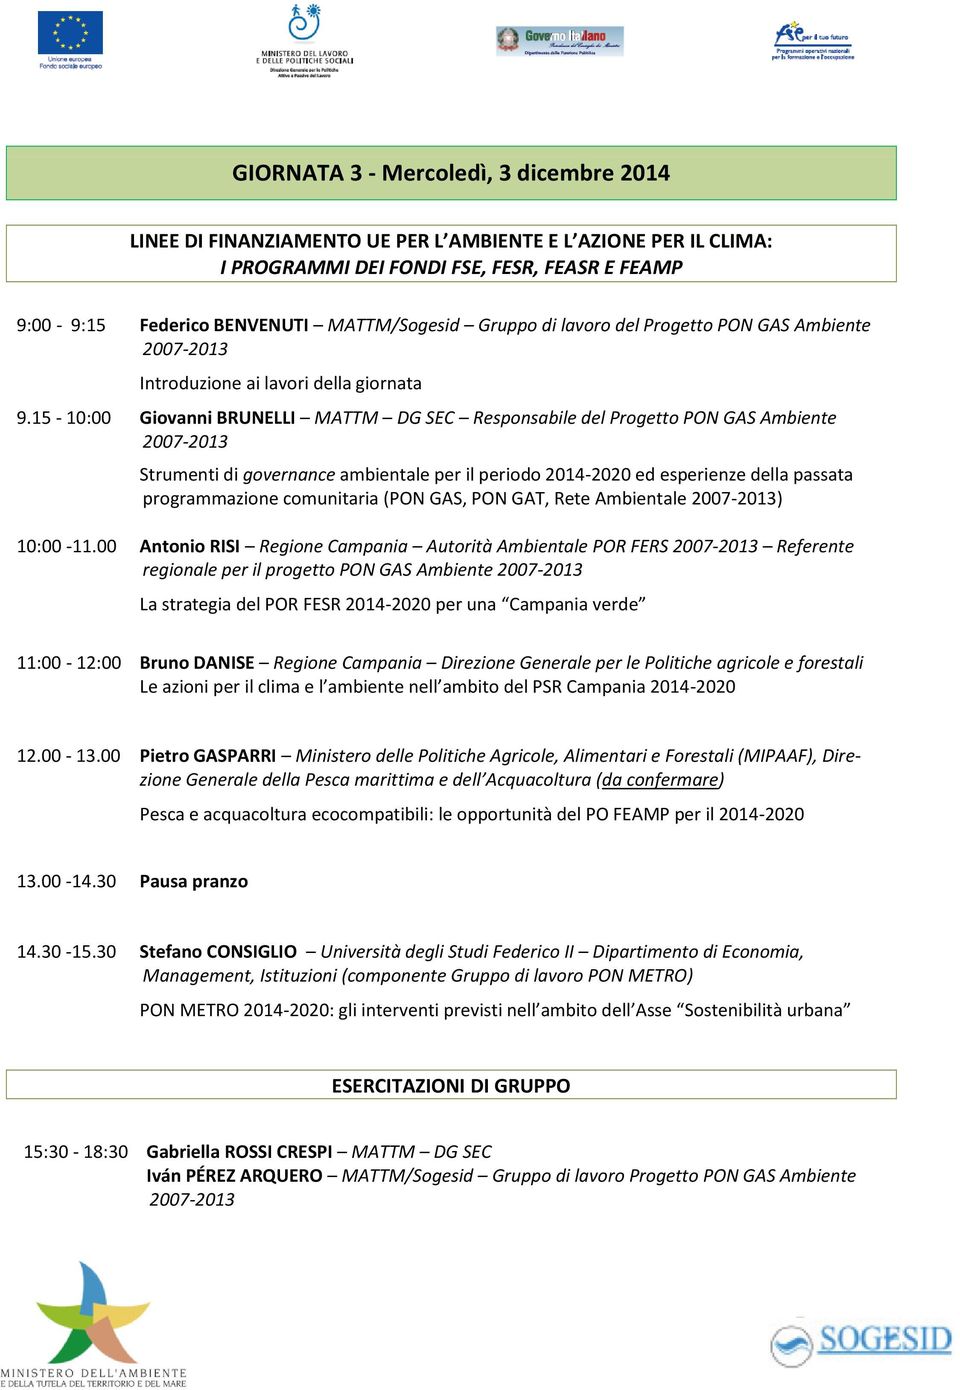 15-10:00 Giovanni BRUNELLI MATTM DG SEC Responsabile del Progetto PON GAS Ambiente Strumenti di governance ambientale per il periodo 2014-2020 ed esperienze della passata programmazione comunitaria